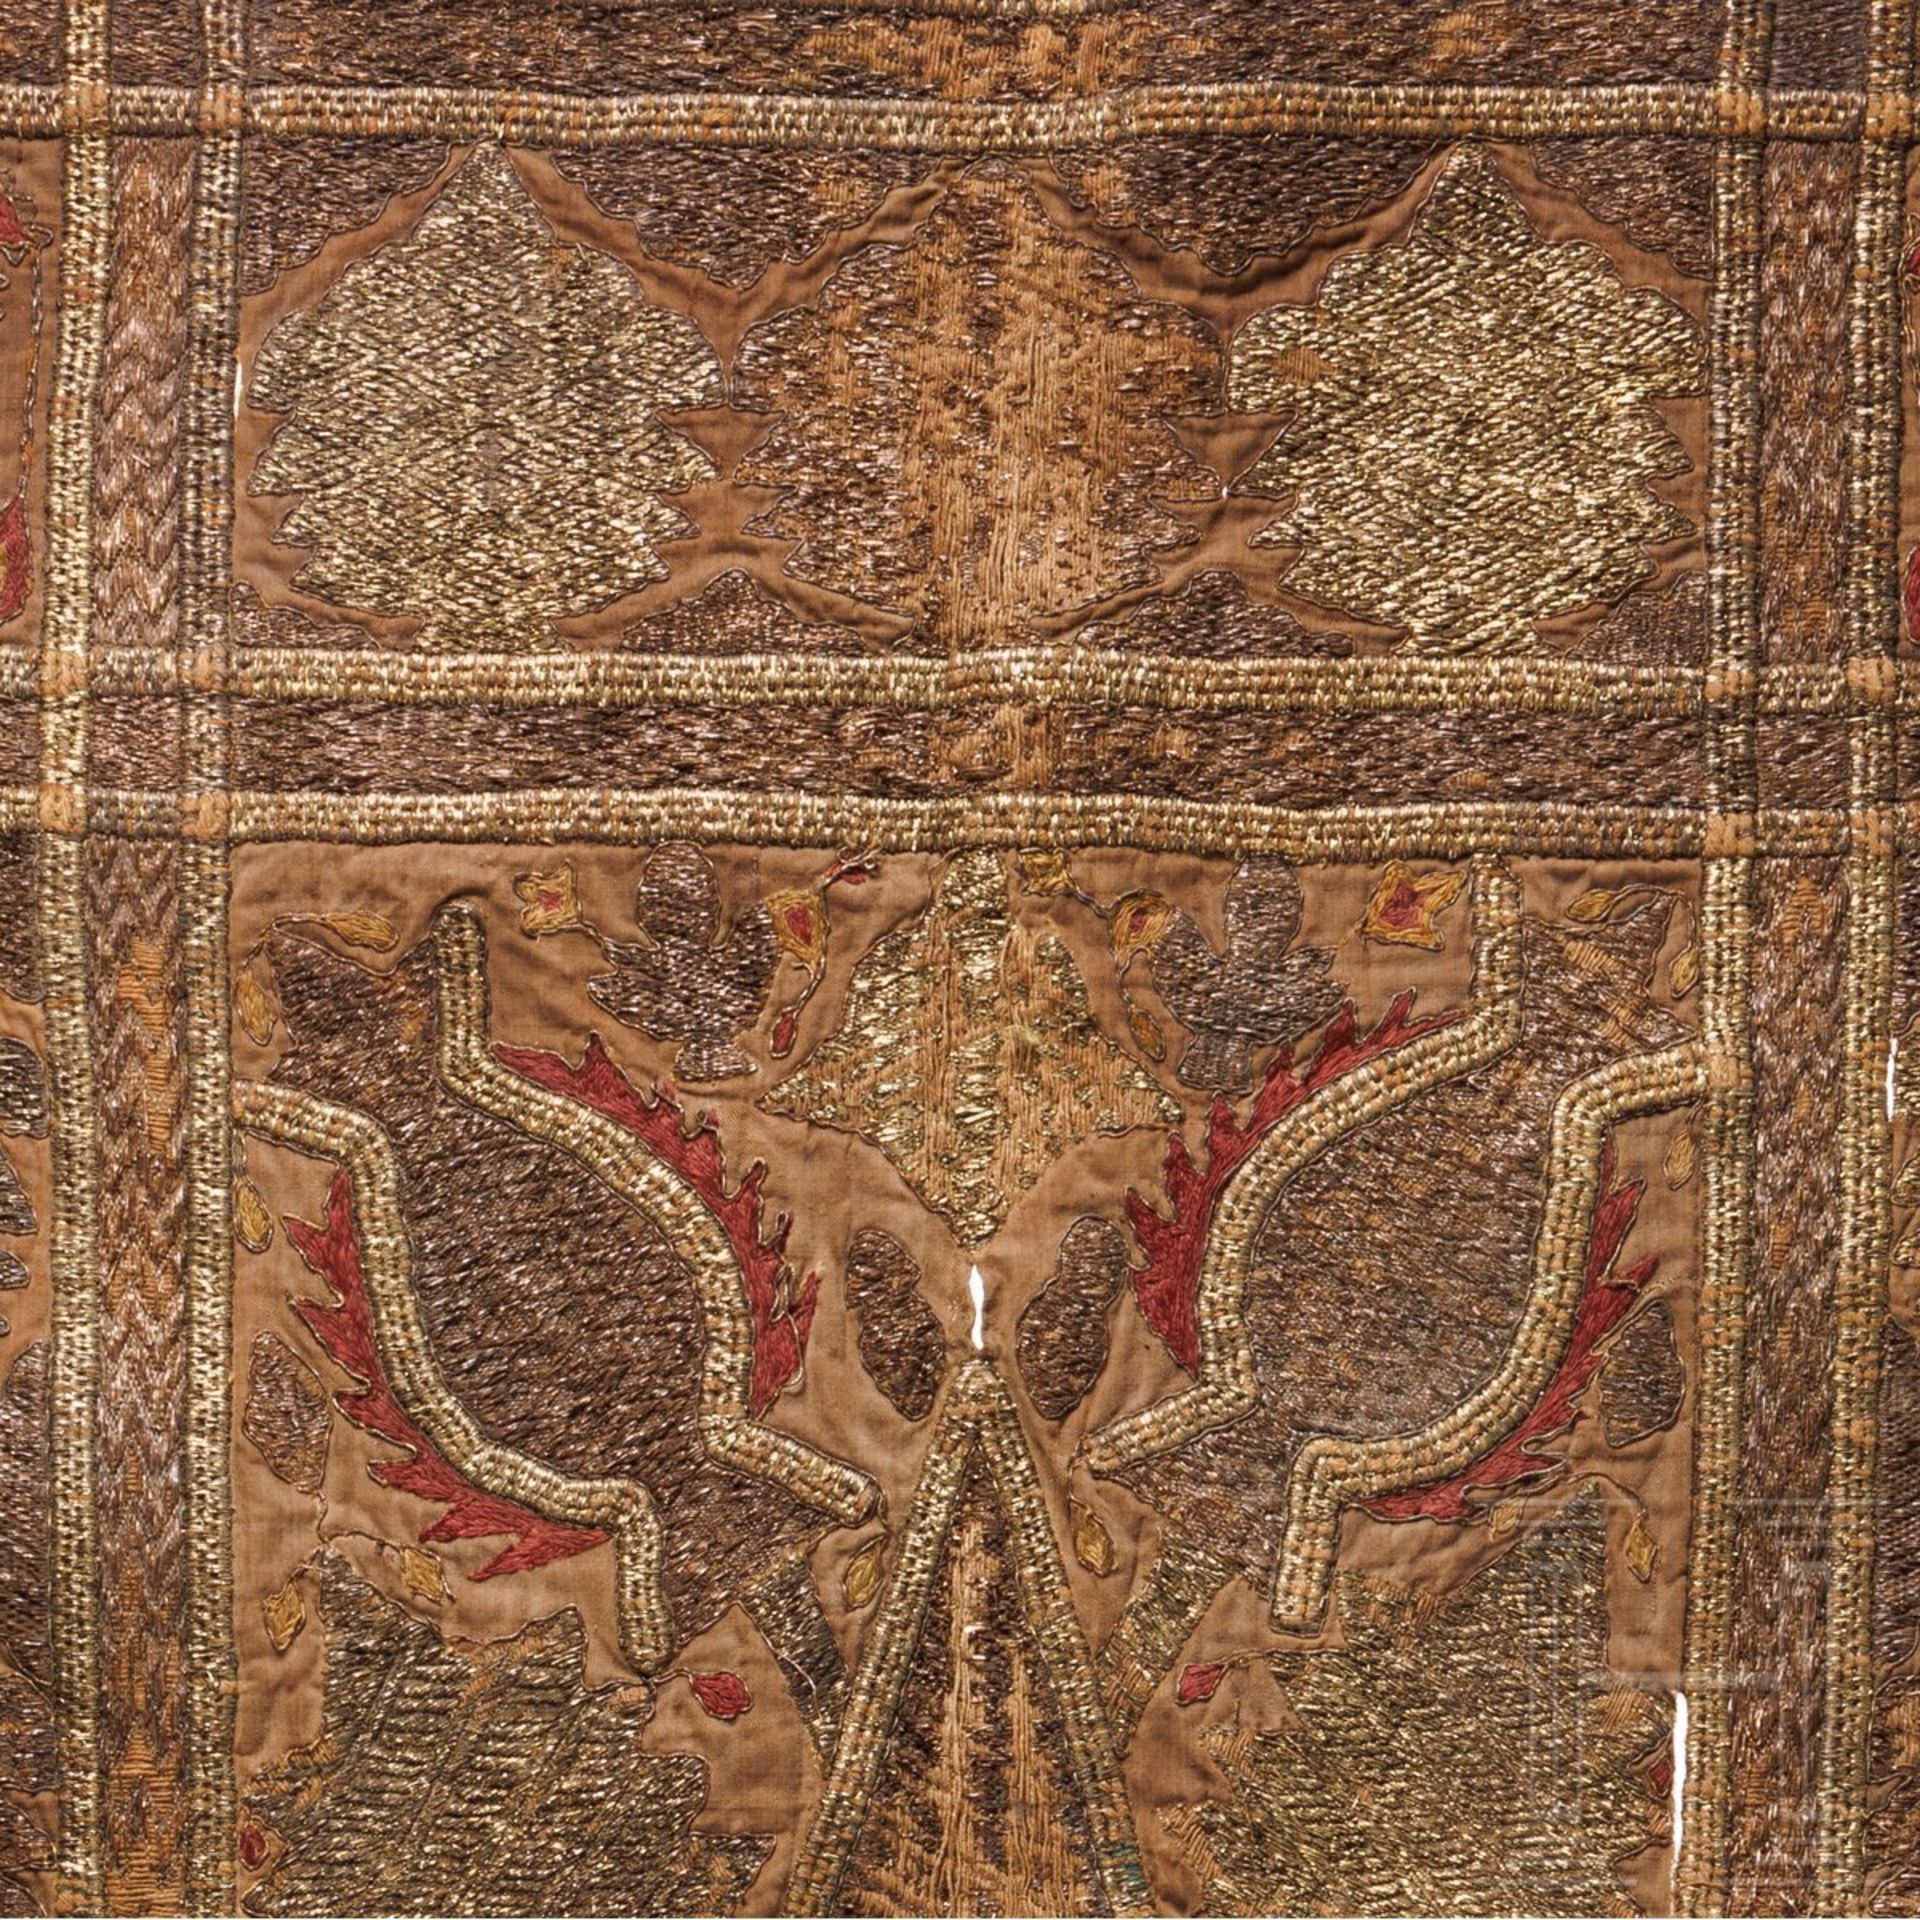 Wandbehang, osmanisch, 19. Jhdt. - Image 3 of 3